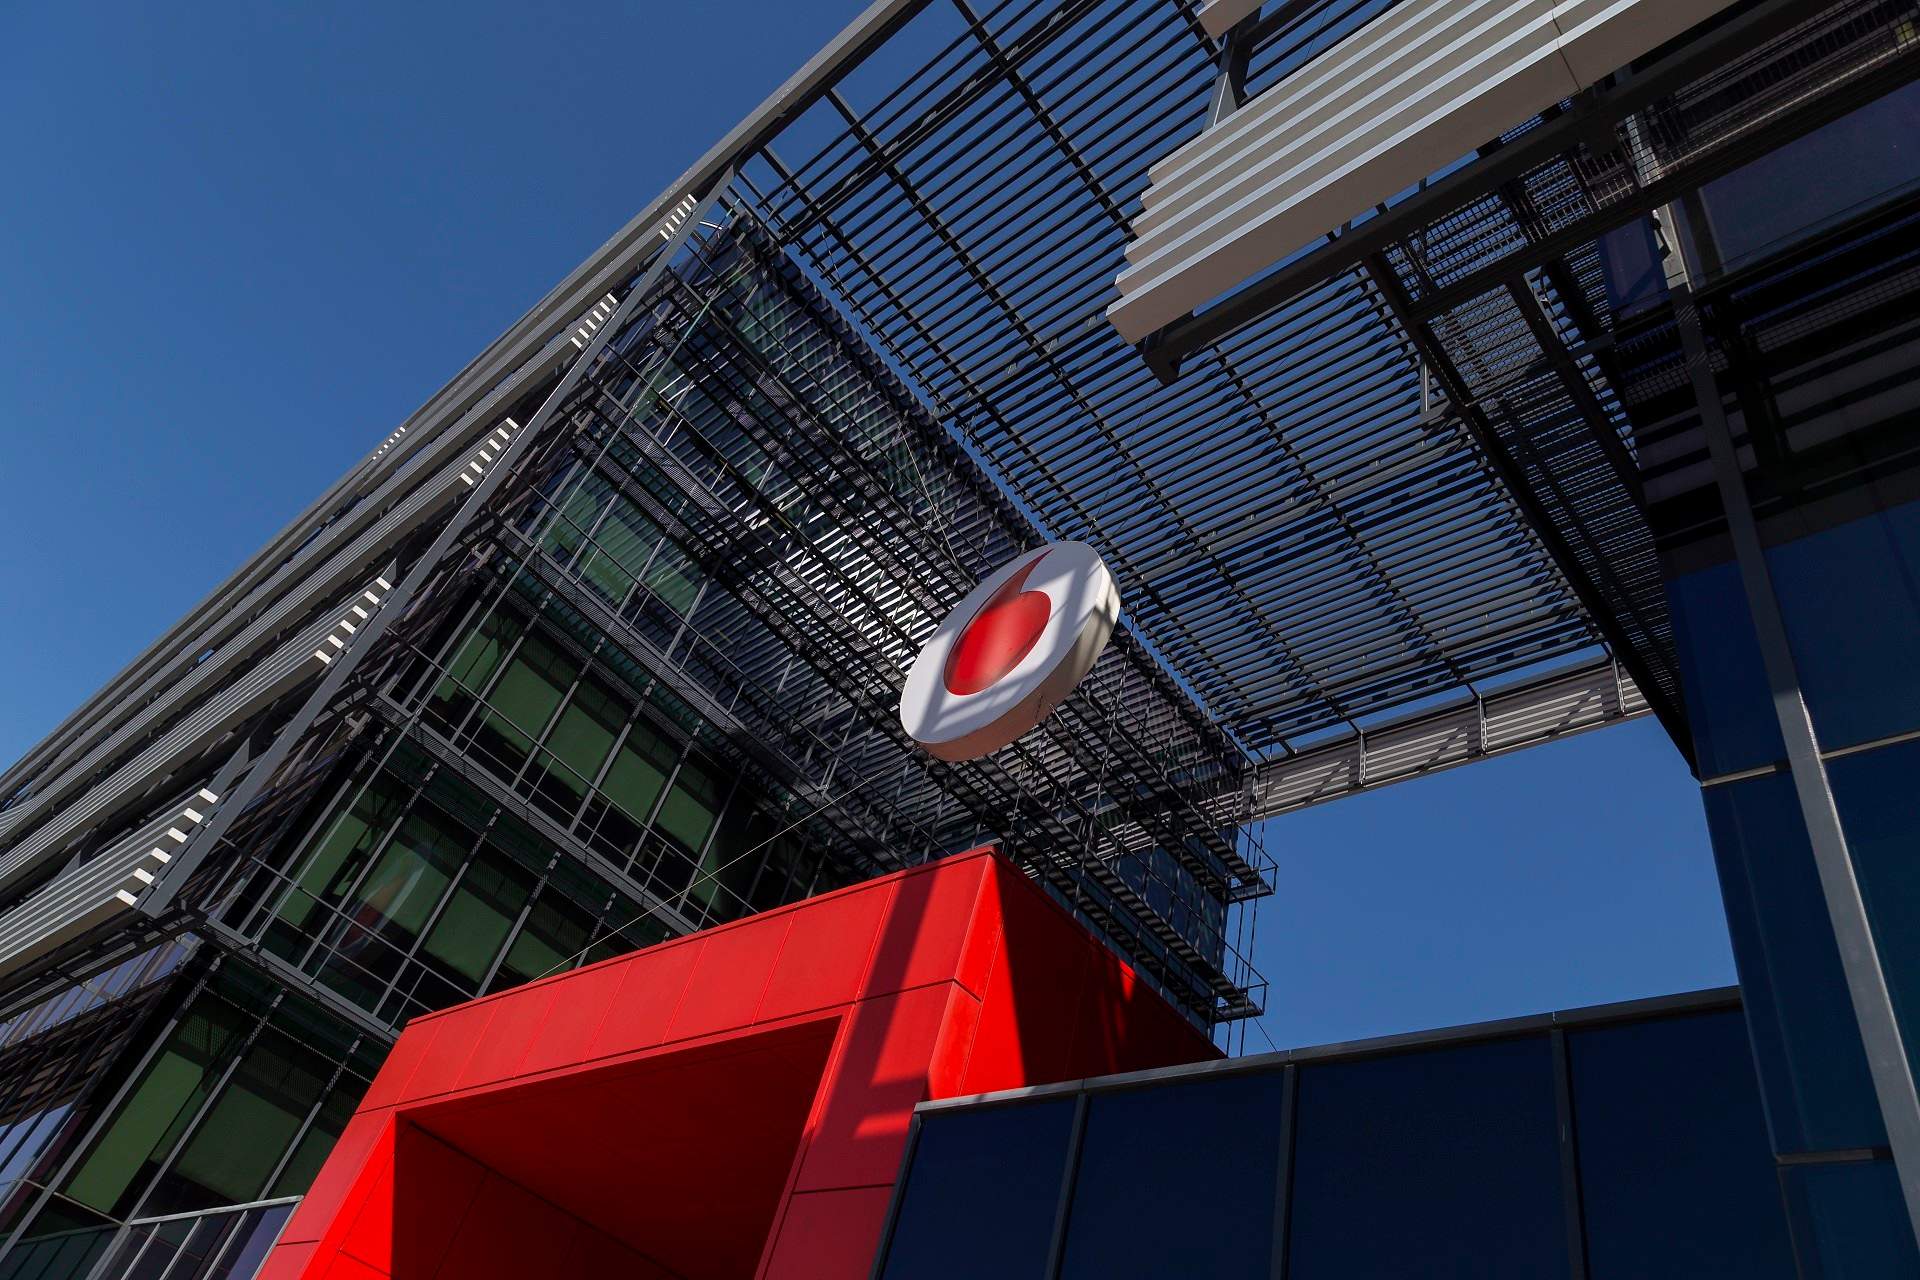 El Gobierno autoriza la compra del negocio de Vodafone en España por parte del fondo británico Zegona